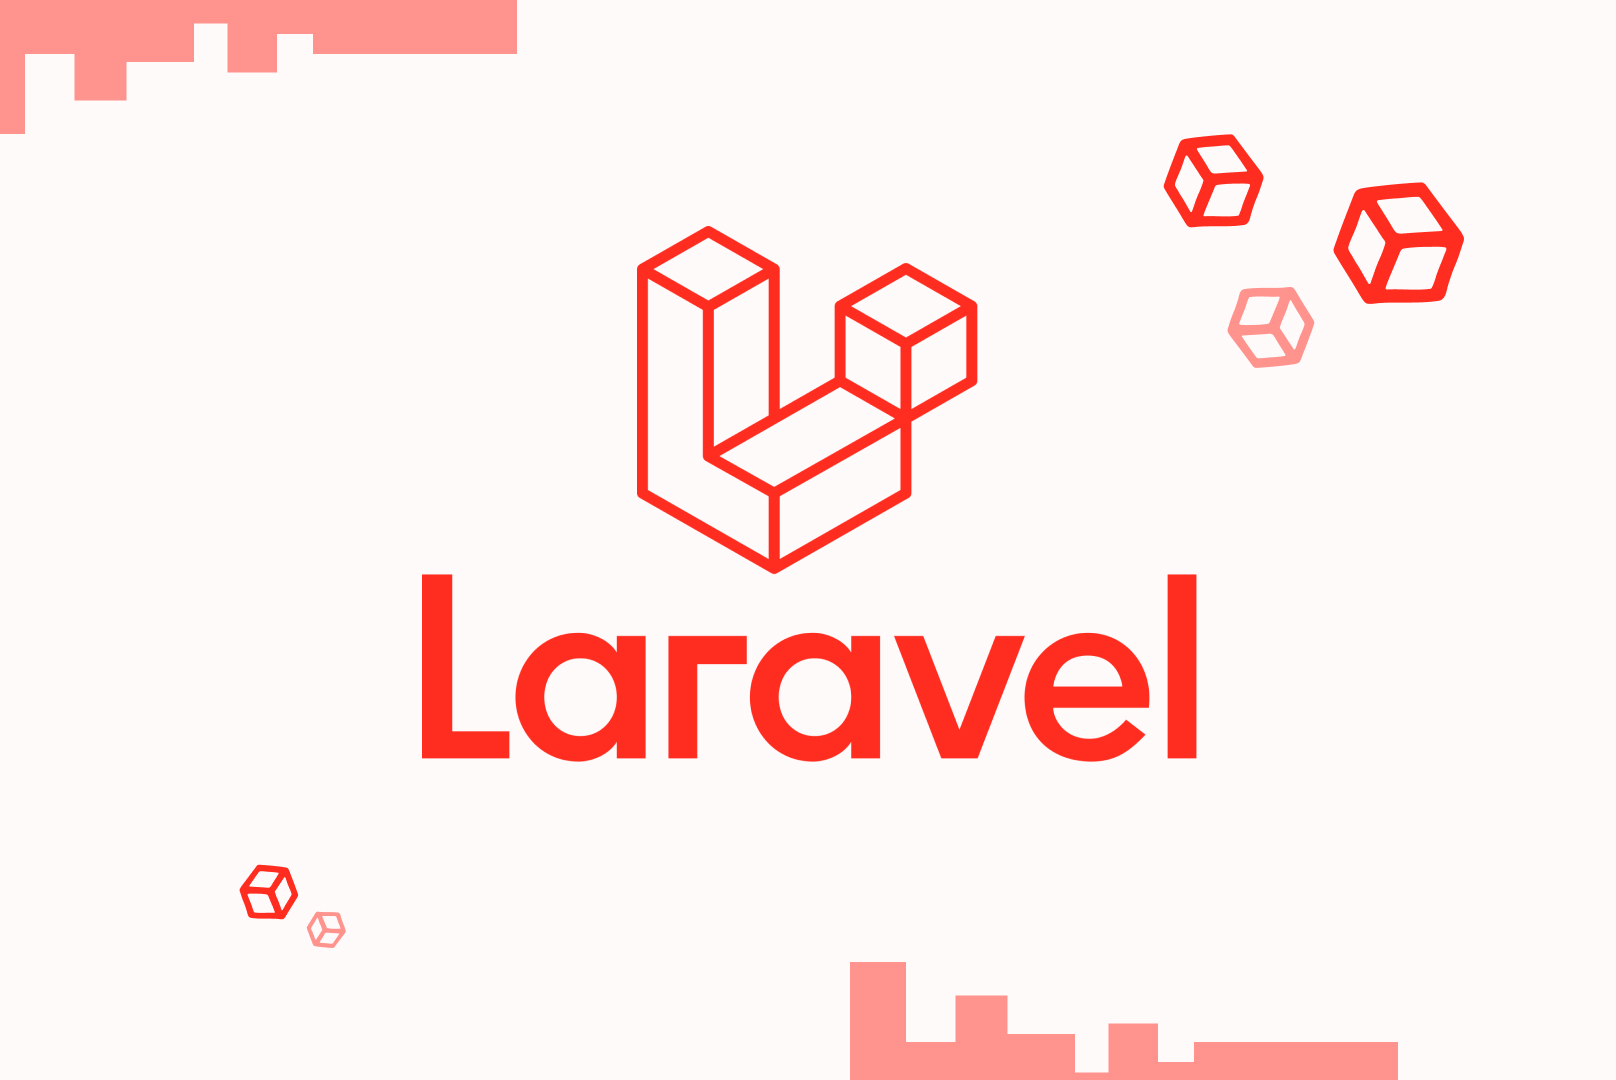 Logo du framework Laravel avec des cubes rouges